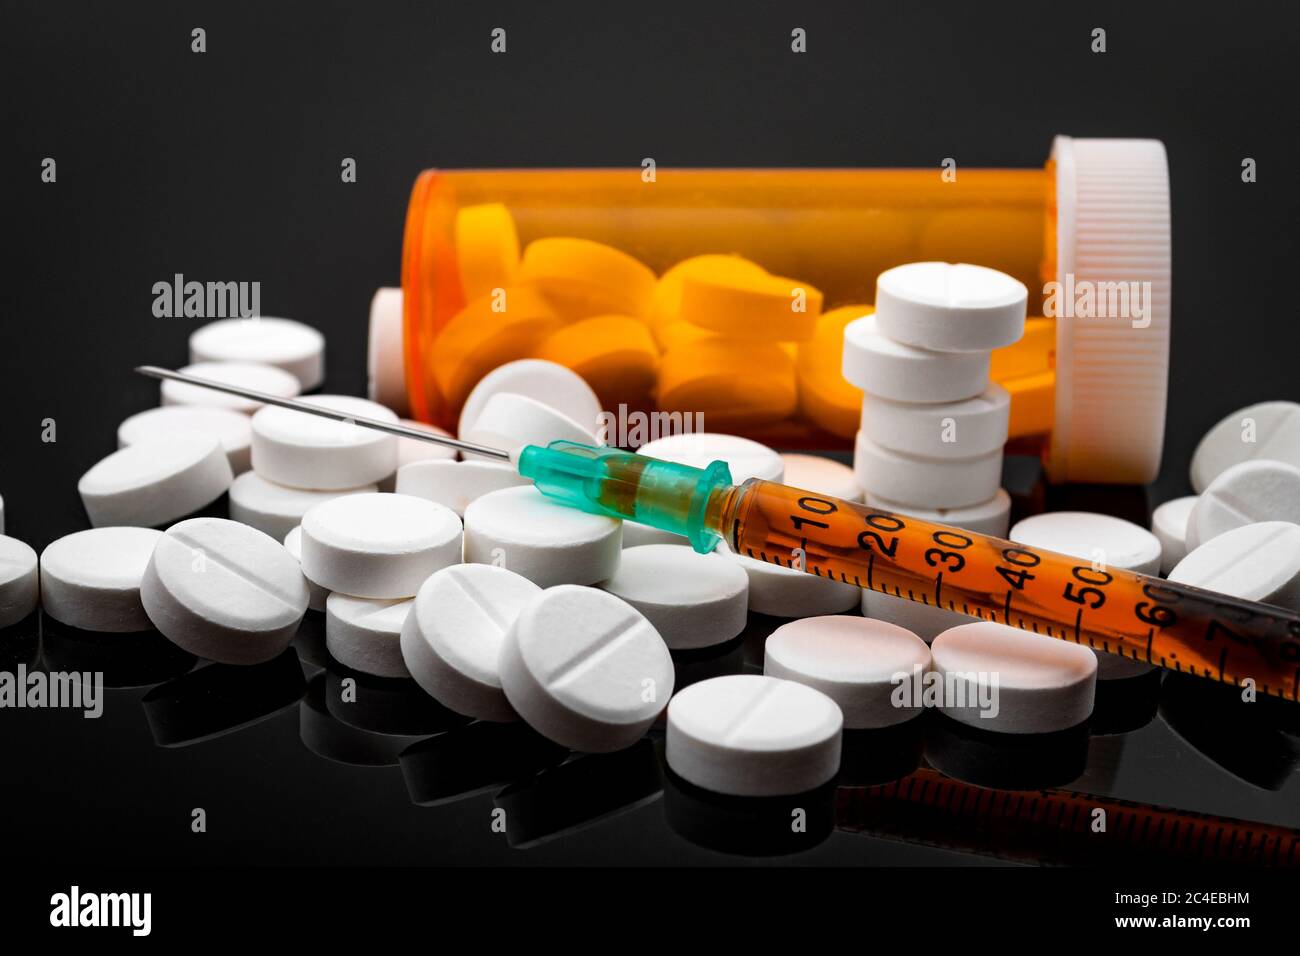 Concetto di epidemia di oppioidi e abuso di droga con una siringa di eroina o altre sostanze narcotiche accanto a un flacone di oppioidi da prescrizione. L'ossicodone è il g Foto Stock